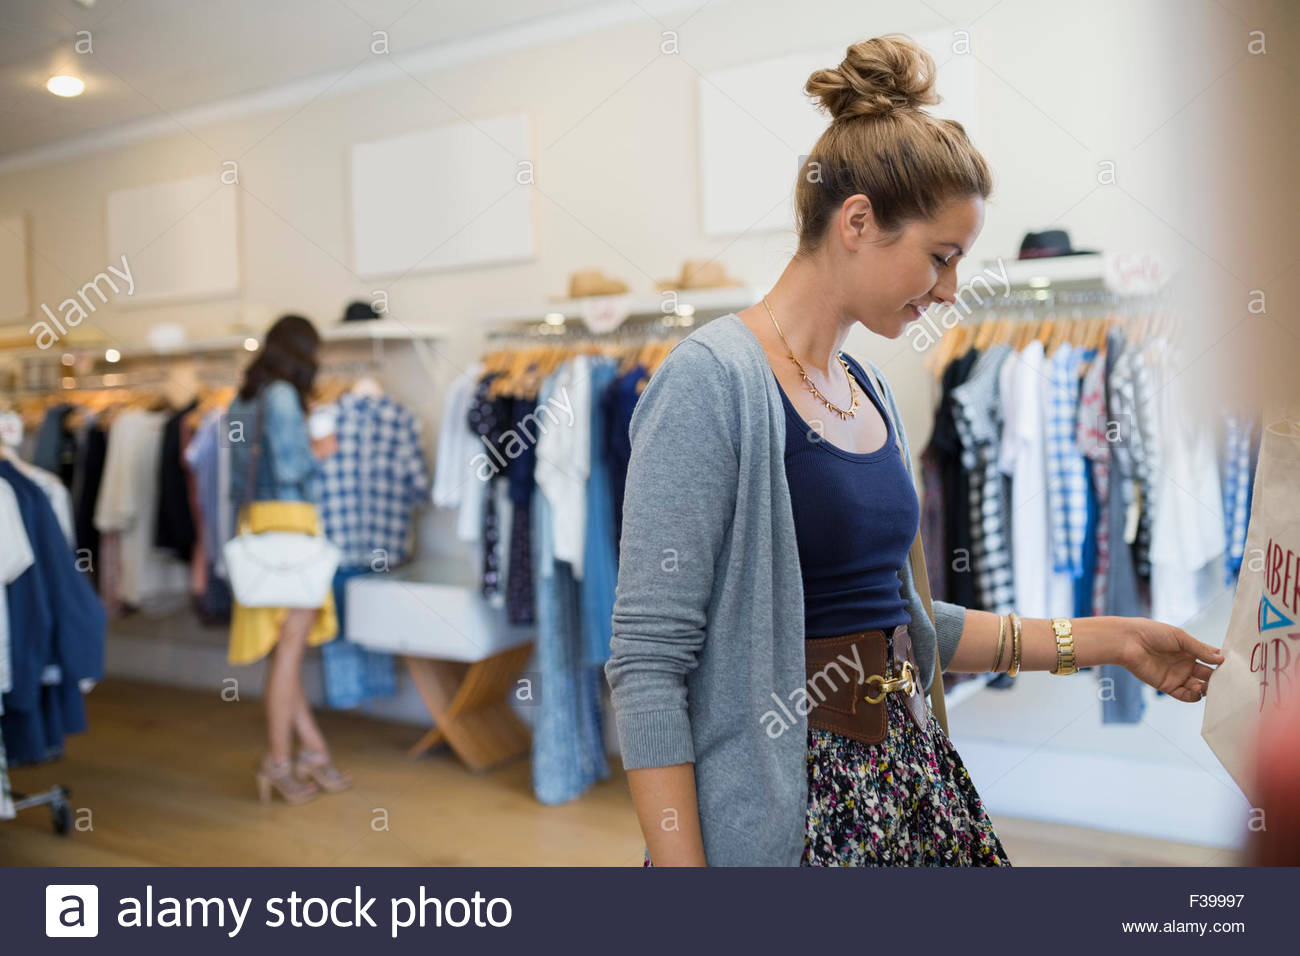 Mujer navegando en la tienda de ropa Foto de stock